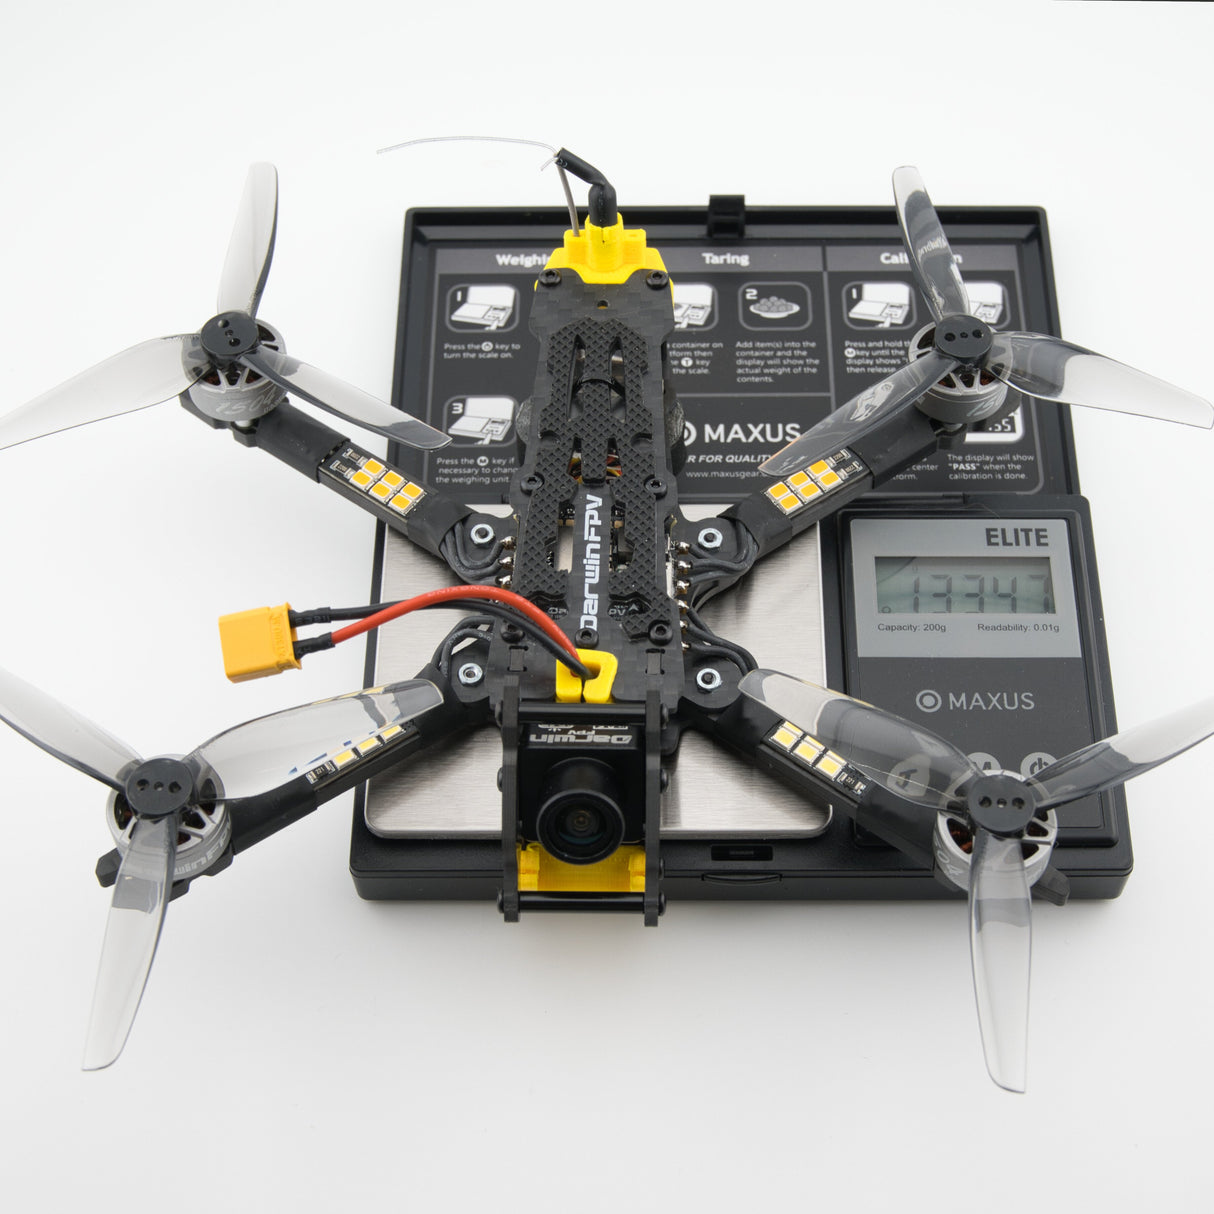 BabyApe II FPV Drone (ELRS BNF)